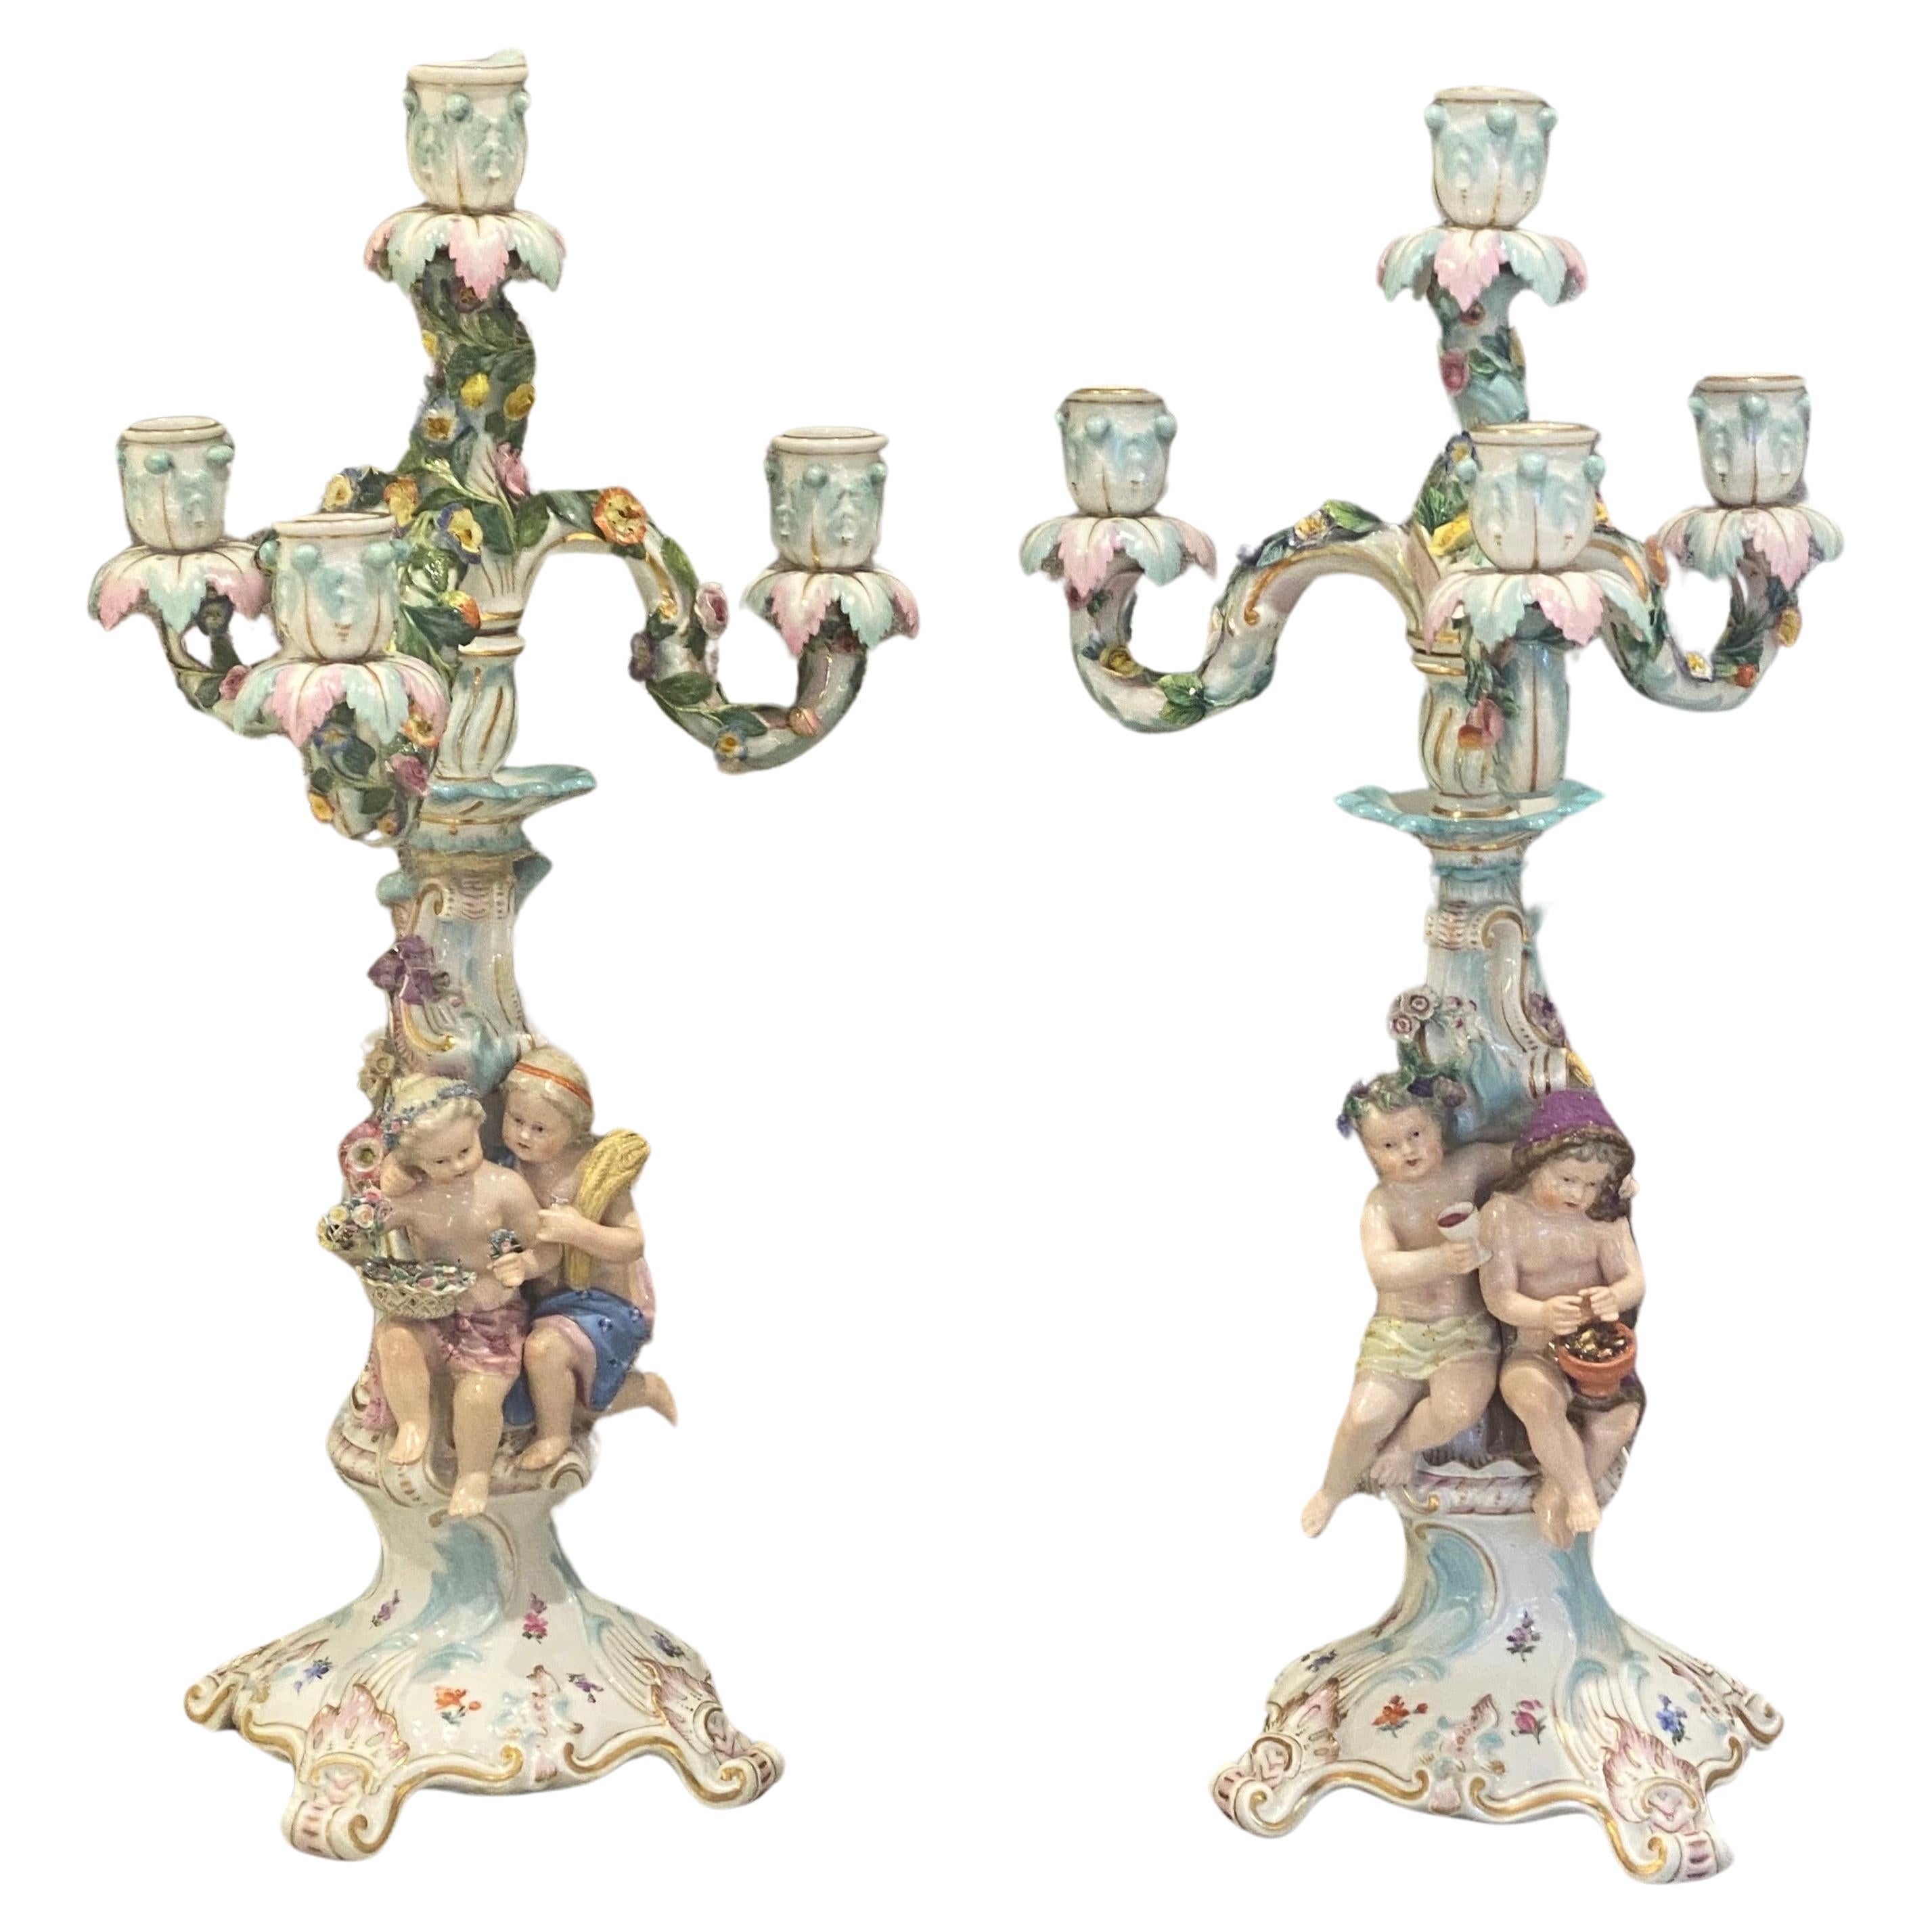 Ces chandeliers en porcelaine de Meissen peints à la main sont très détaillés.
Deux enfants pour chaque attente de l'été et de l'automne, ainsi que pour les vendanges et le raisin.
 Décoration incrustée de fleurs et de fruits,
Lorsque la partie